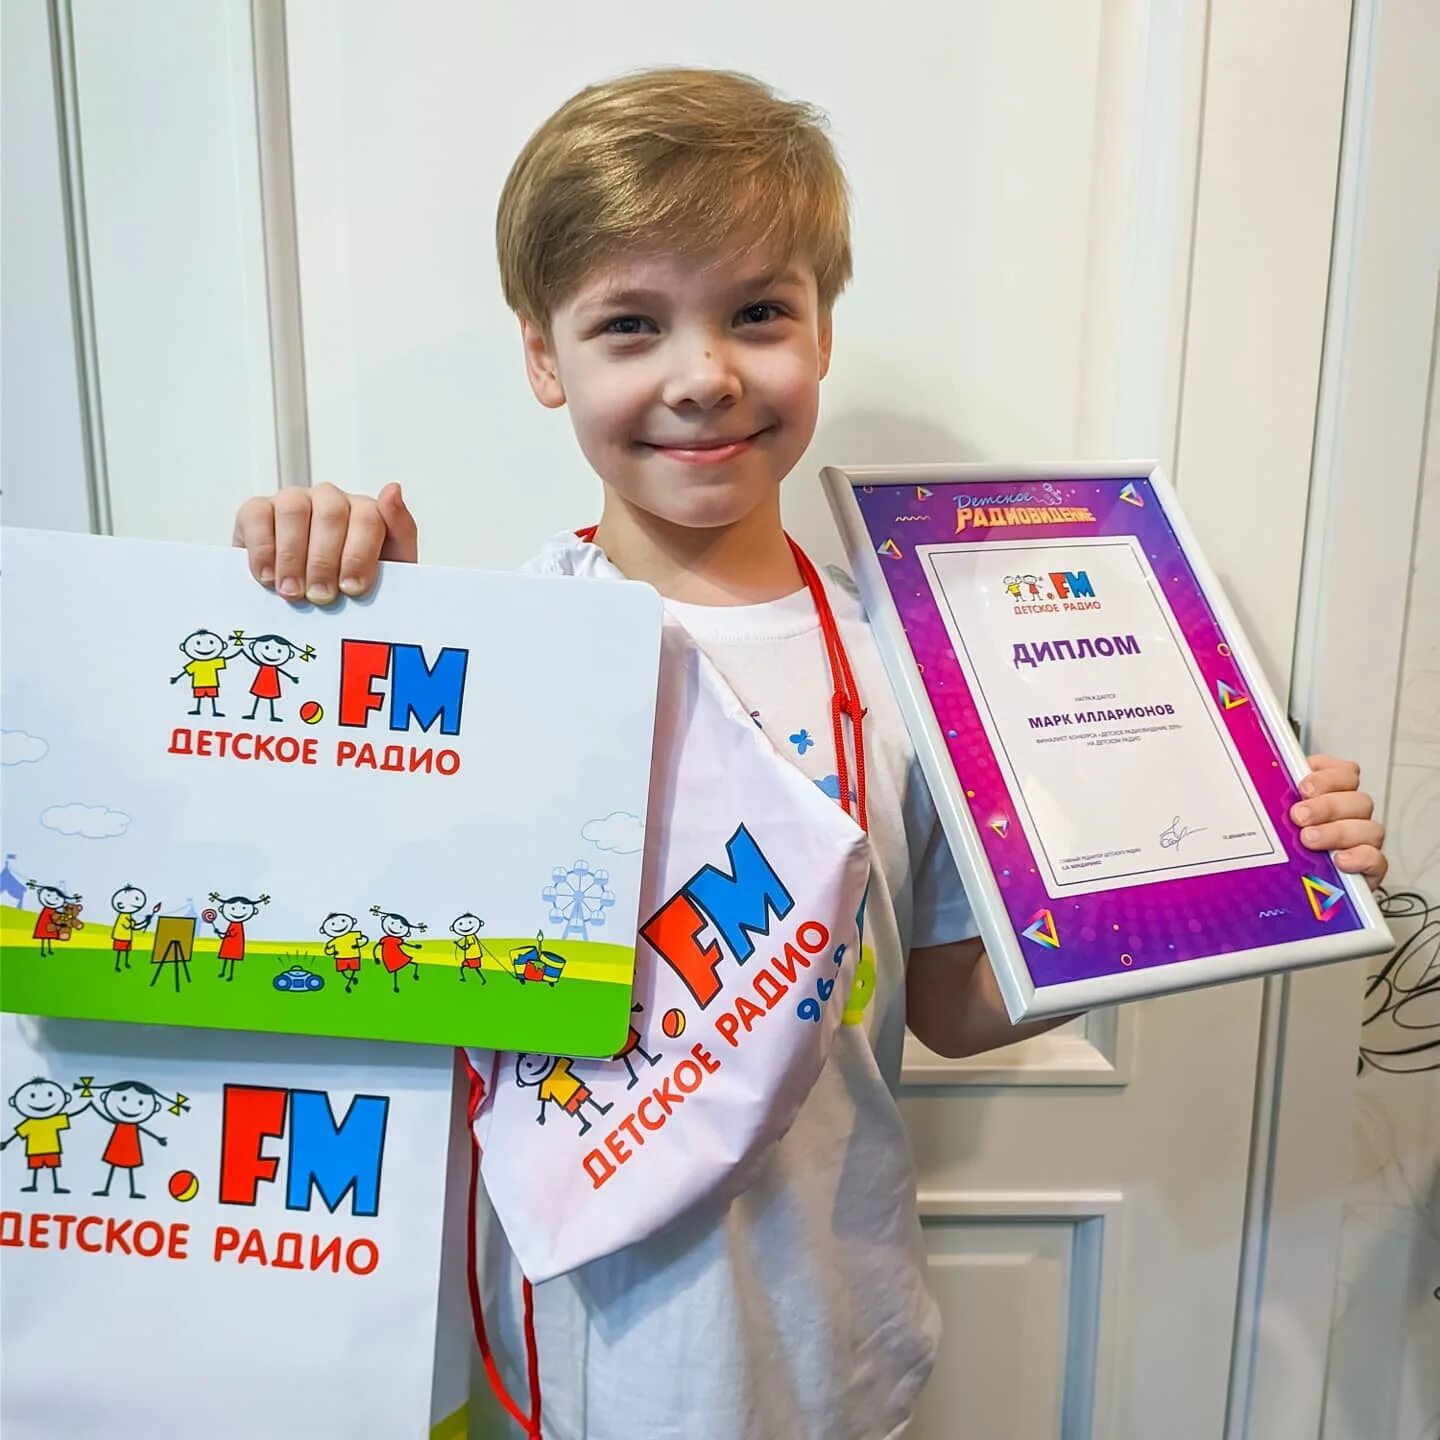 Radio детское. Детское радио. Детское радио для детей. Детское радио картинки. Fm детское радио.